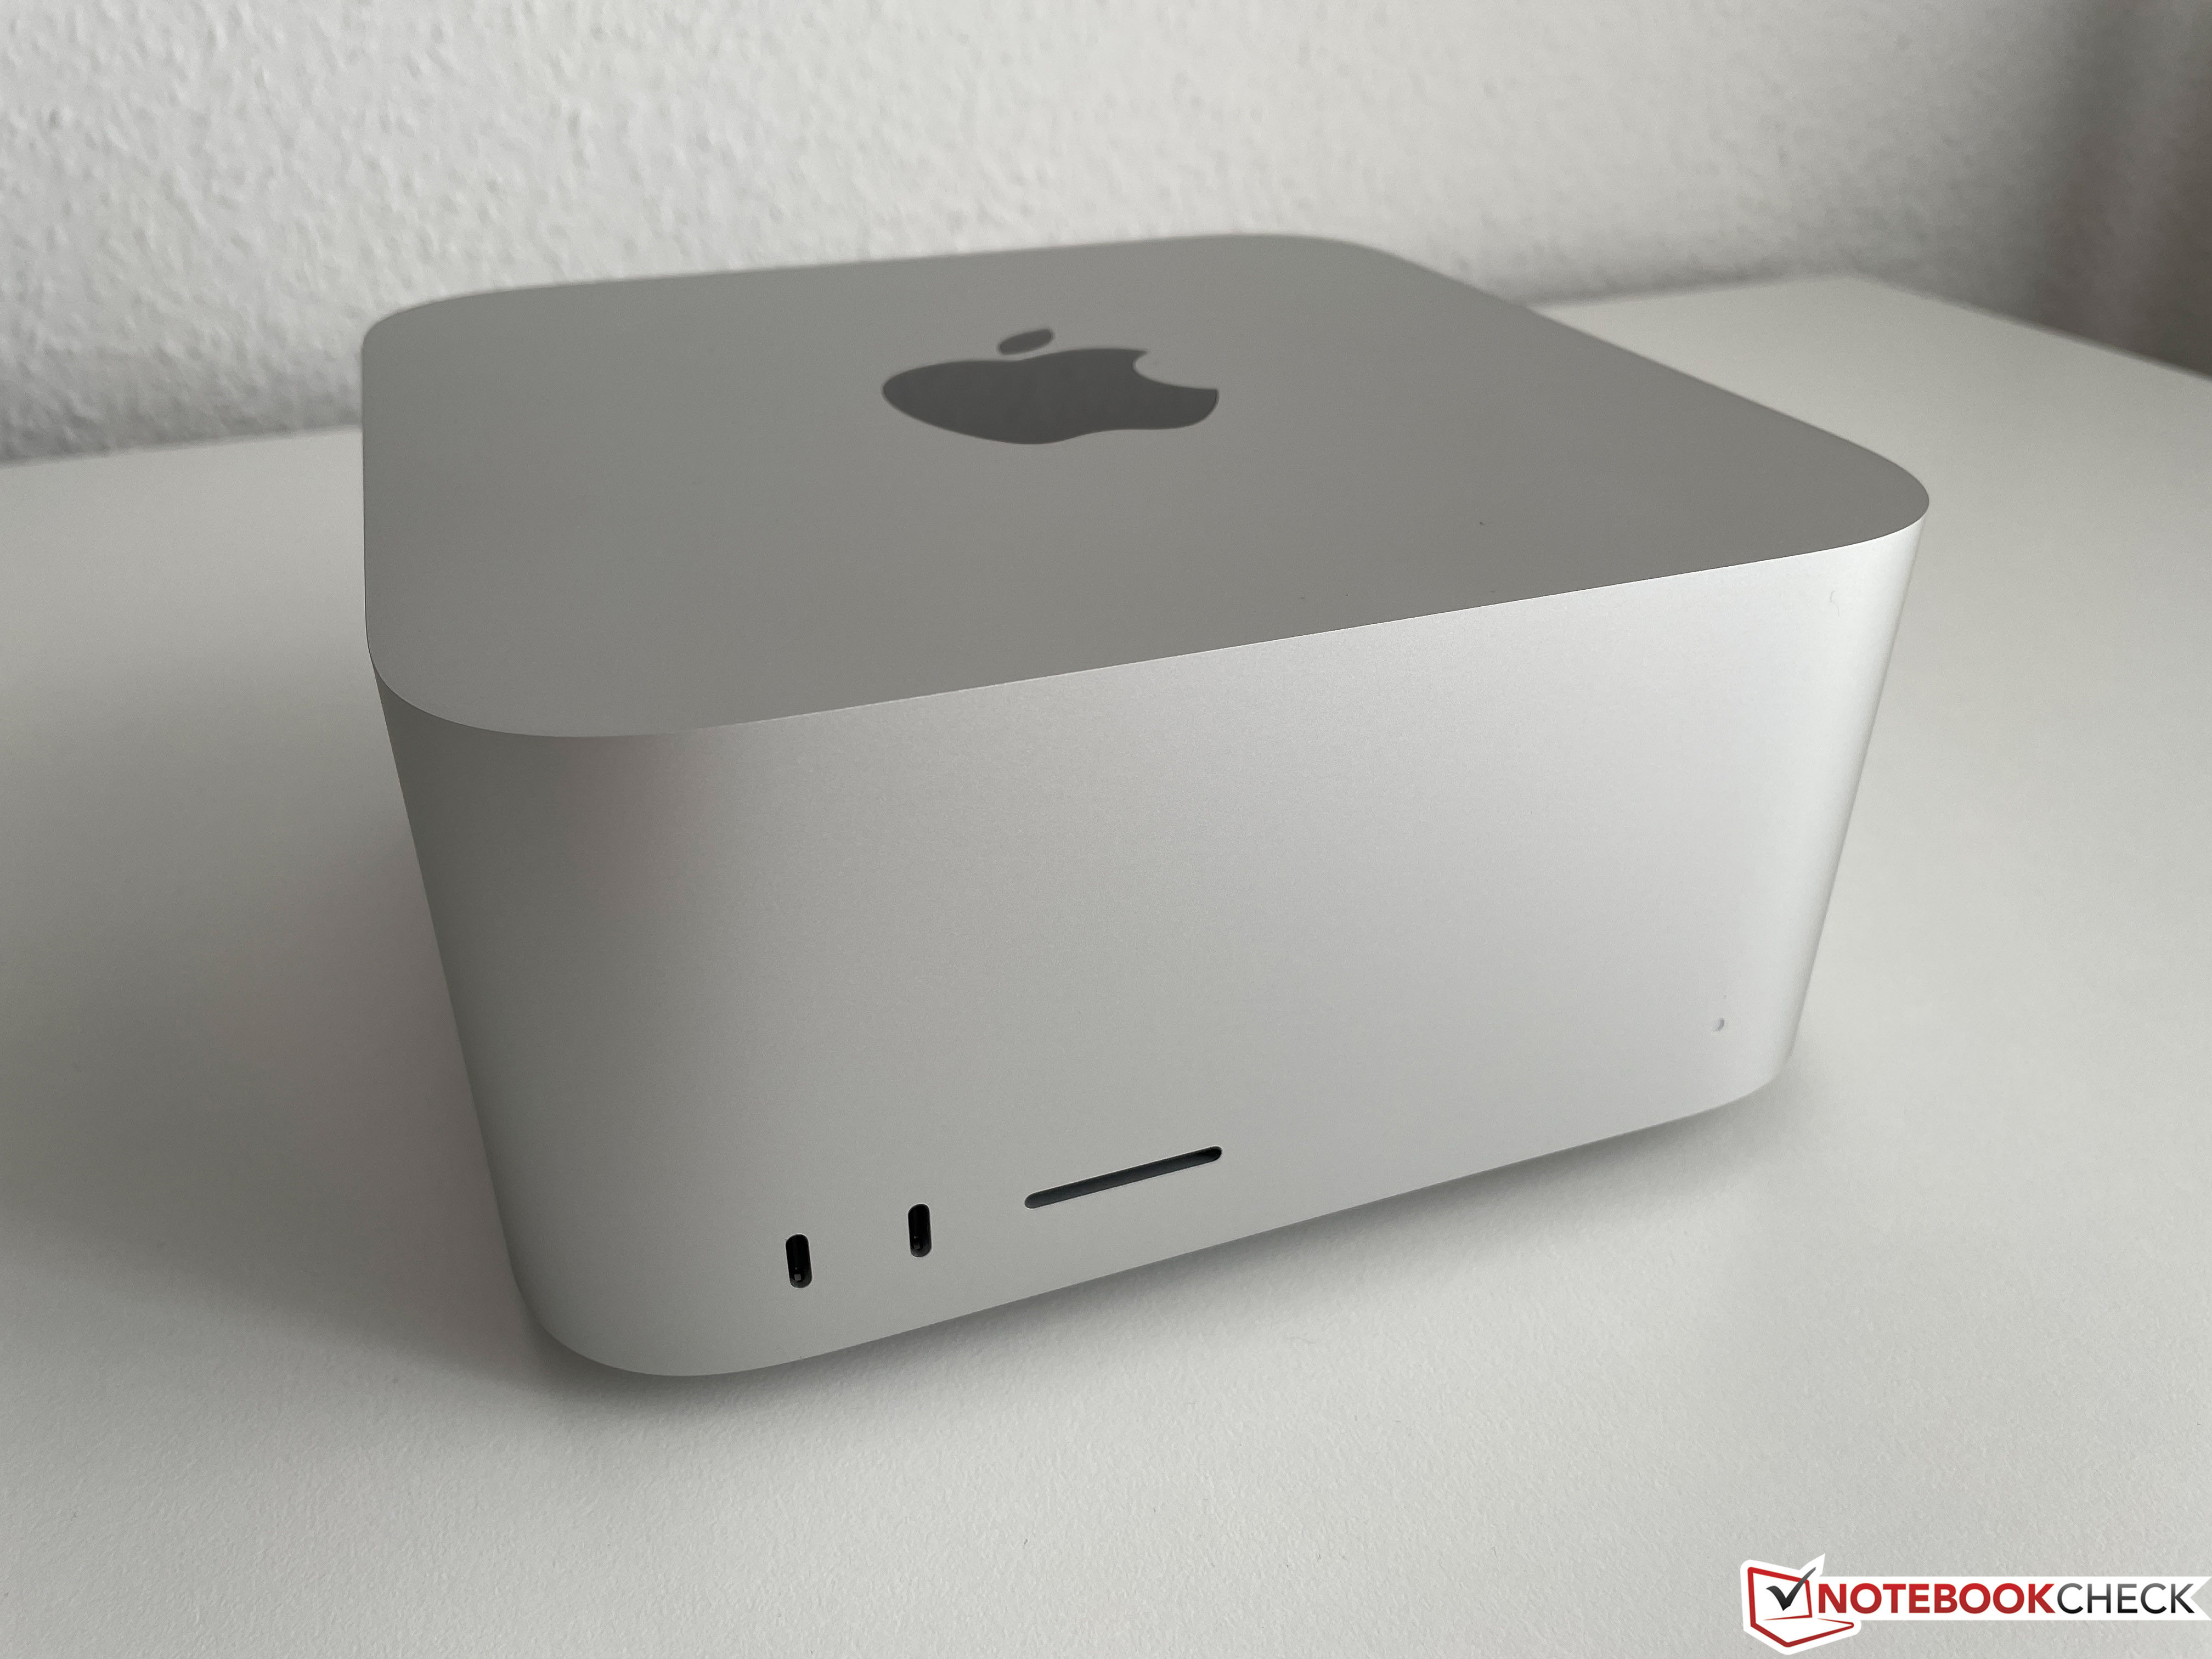 MacBook M1: conheça todos os modelos com o processador da Apple